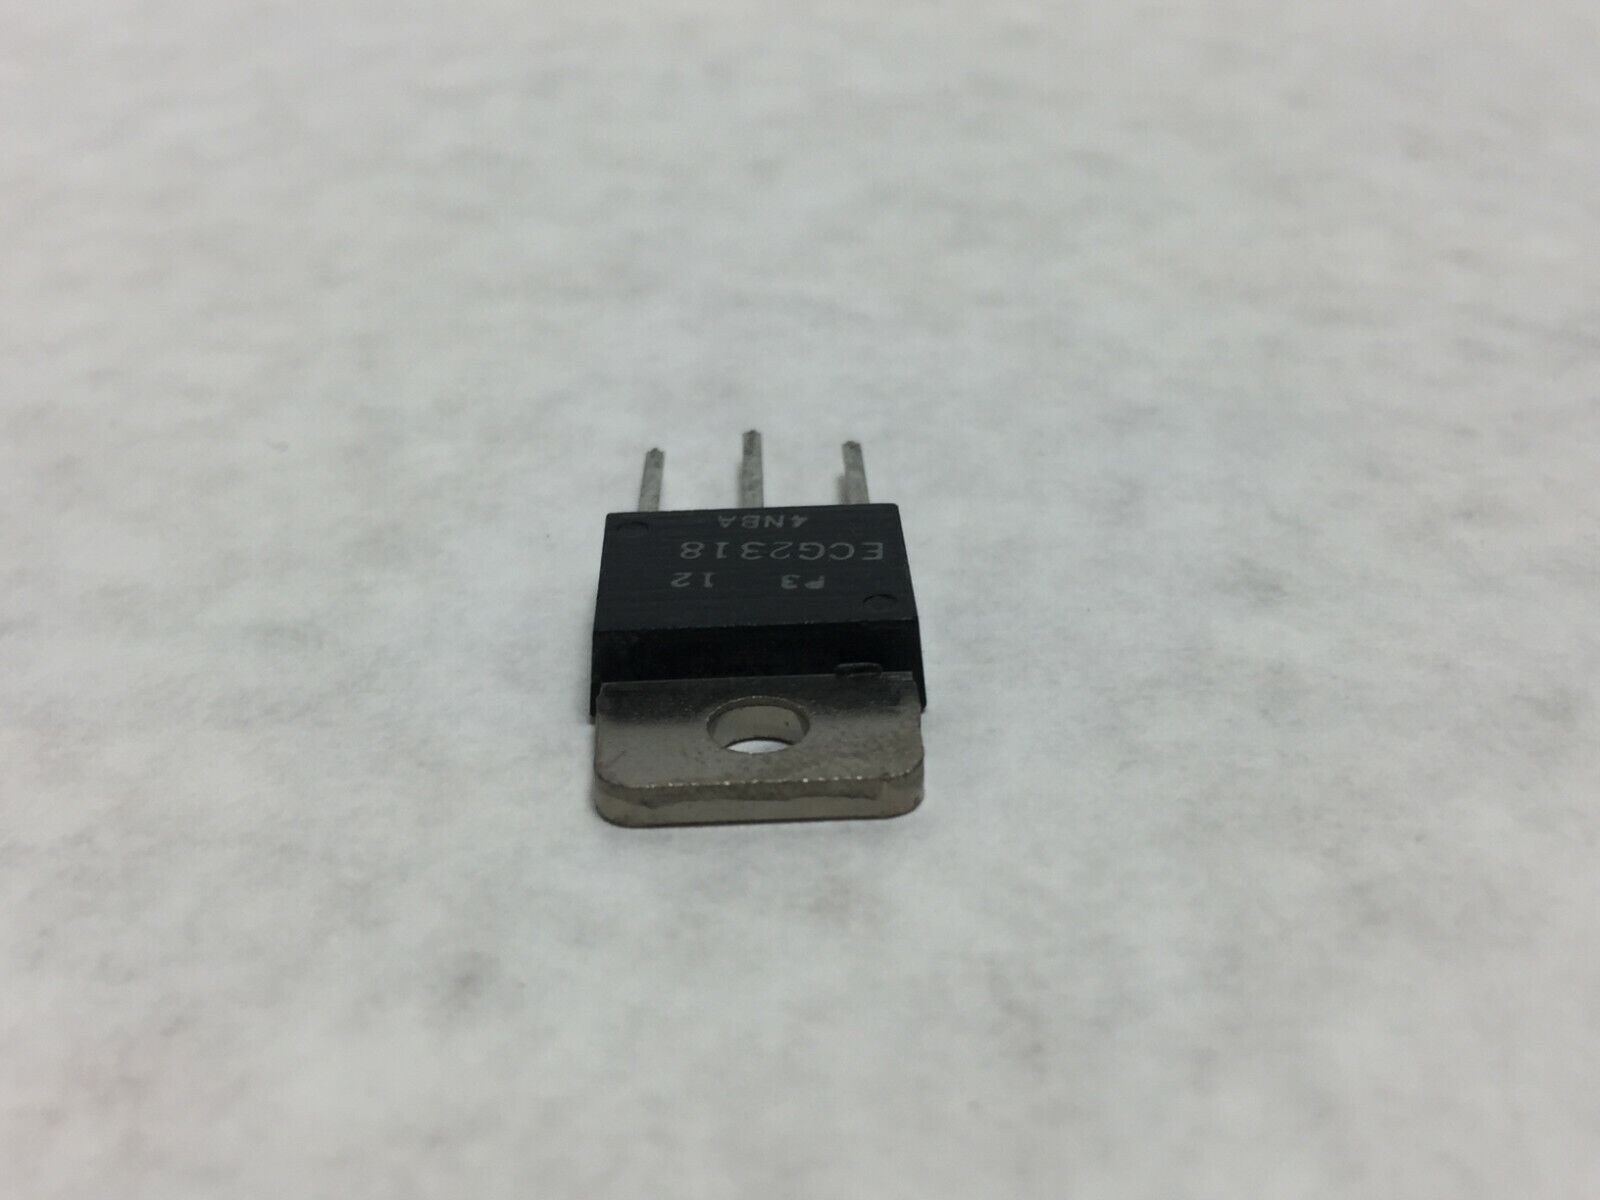 NOS  ECG2318 Transistor  Lot of 8